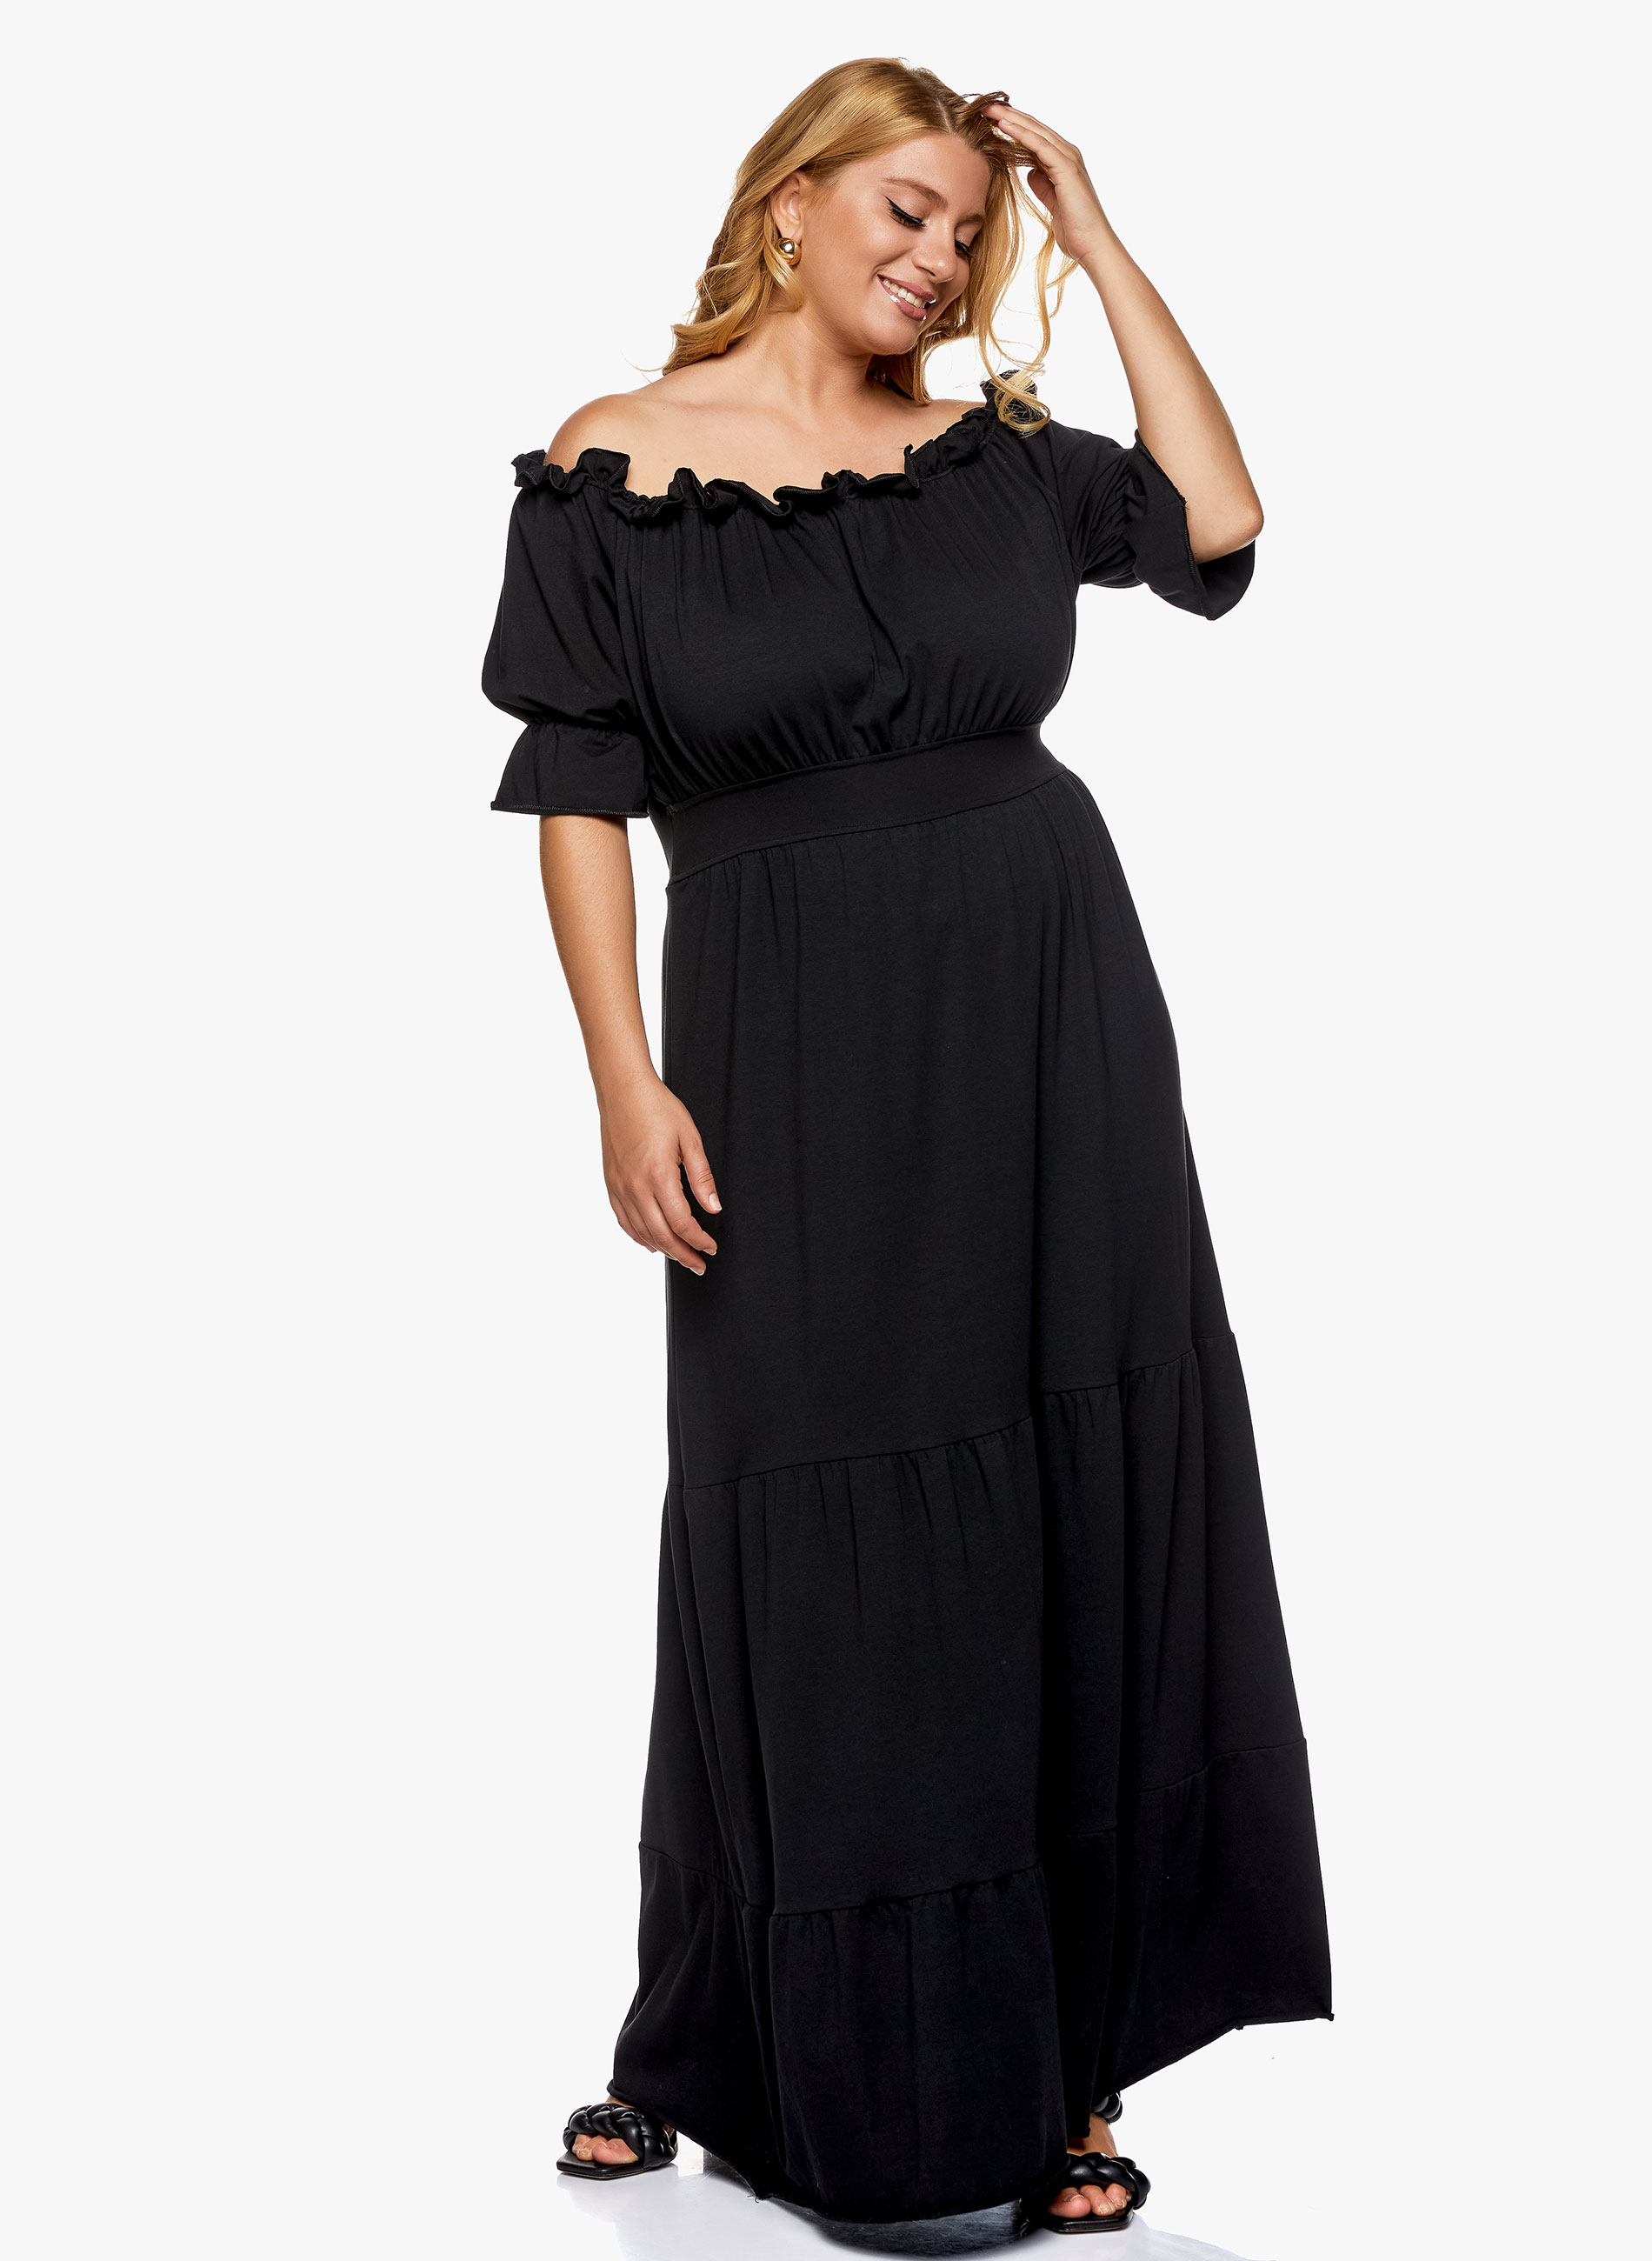 Βαμβακερό έξωμο φόρεμα σε μάξι γραμμή σε μαύρο χρώμα. Διαθέτει 3/4 μανίκι, μεσάτη εφαρμογή και βολάν στο τελείωμα. Επιλέξτε το και κερδίστε τις εντυπώσεις!